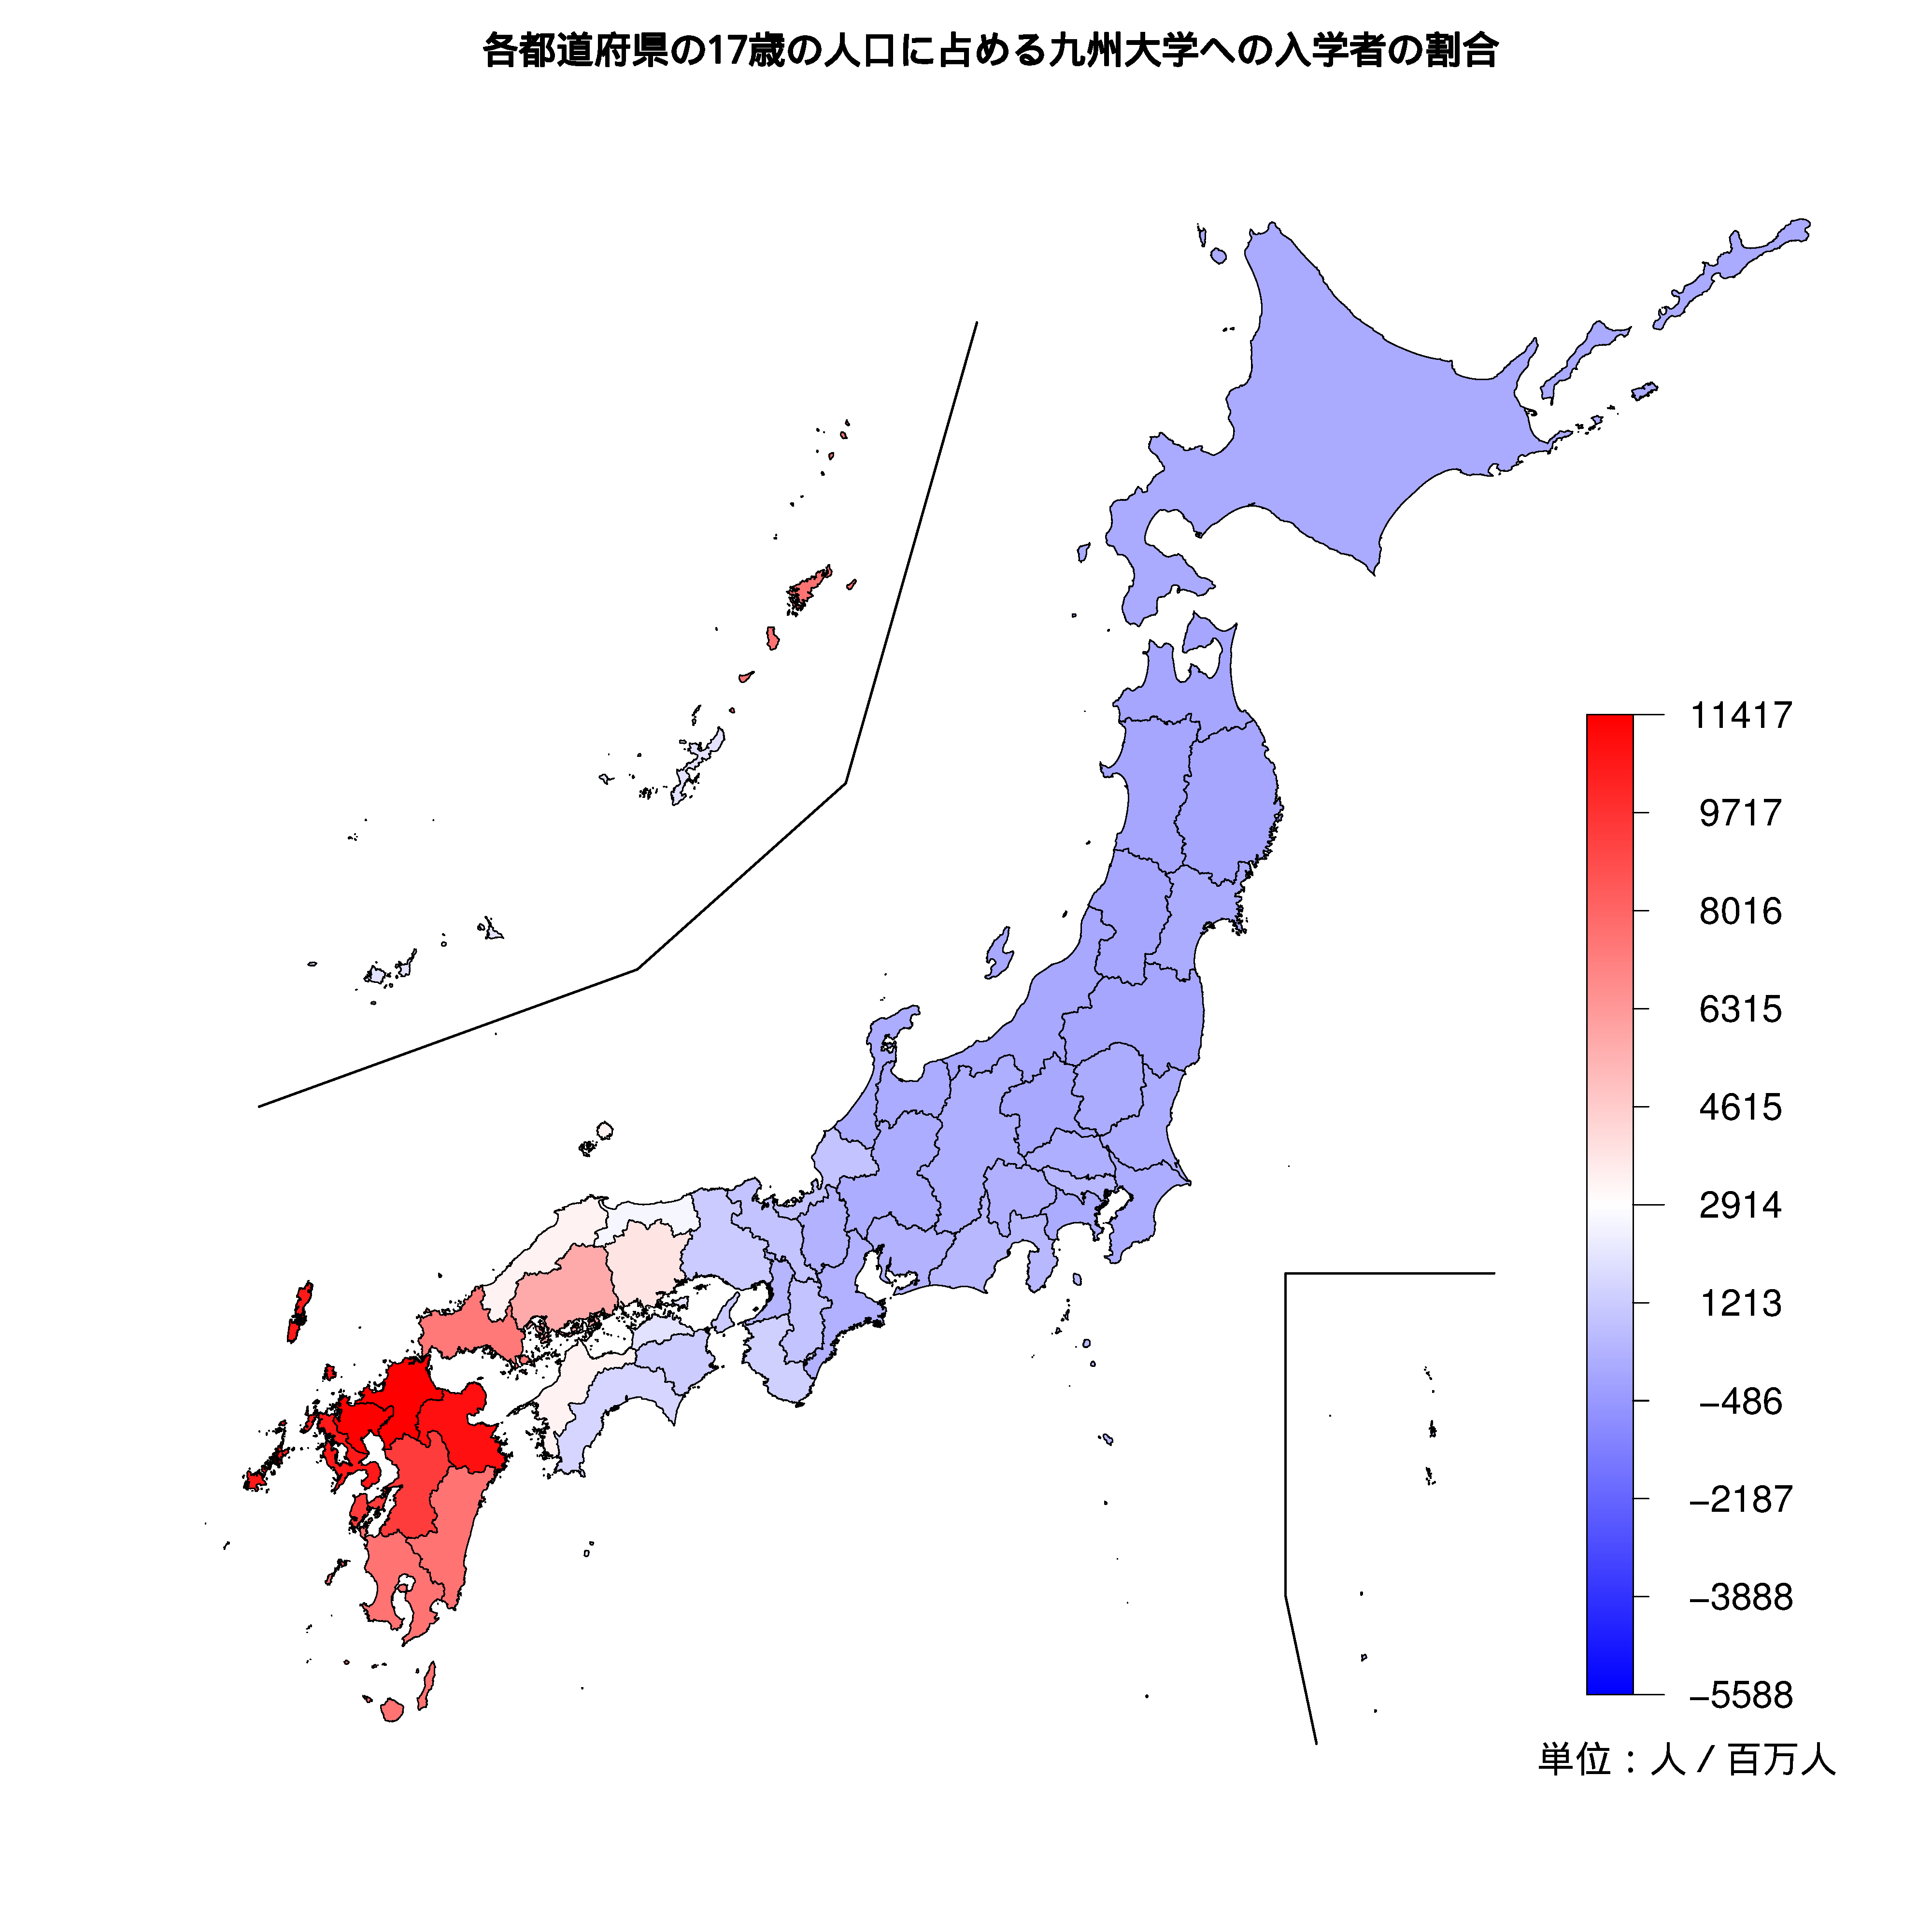 九州大学への入学者が多い都道府県の色分け地図